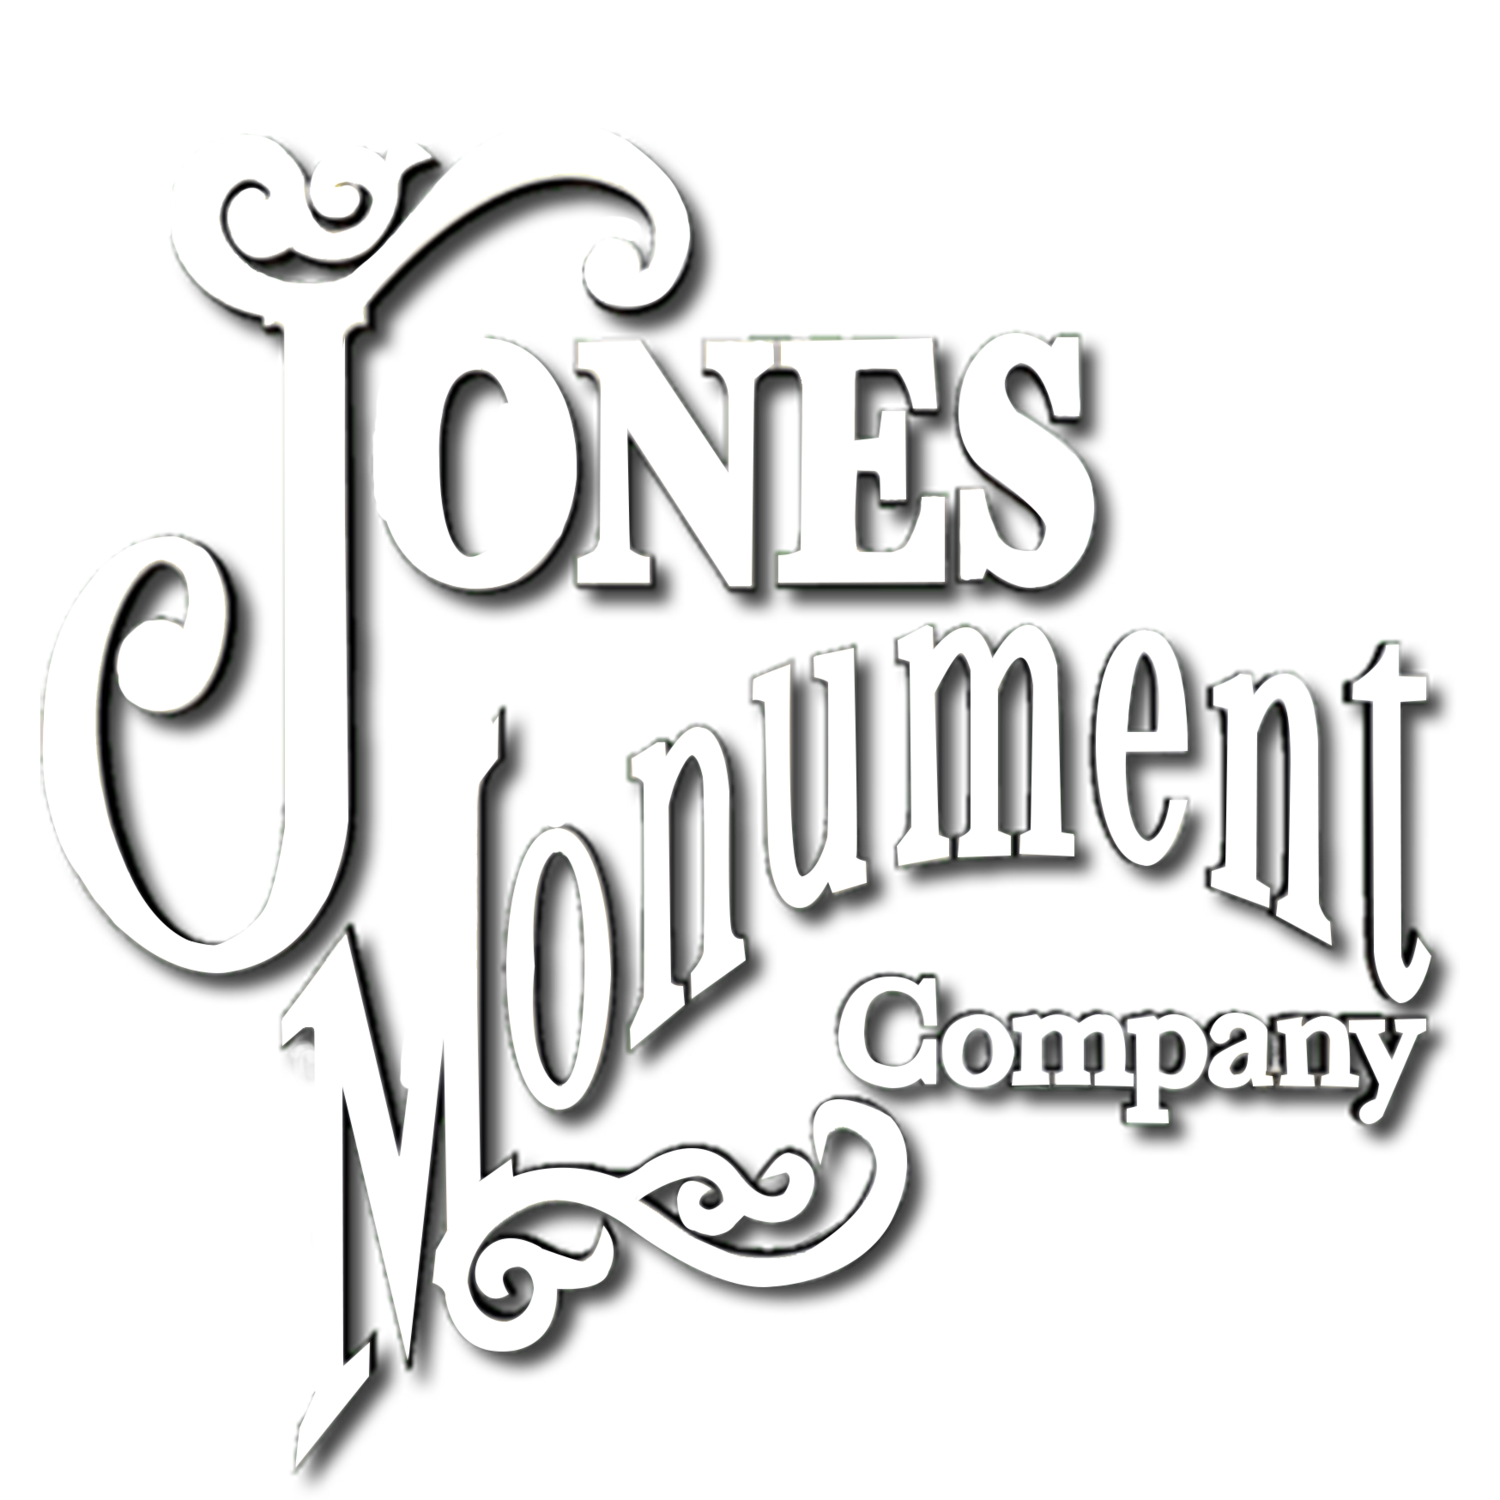 Jones Monument Company